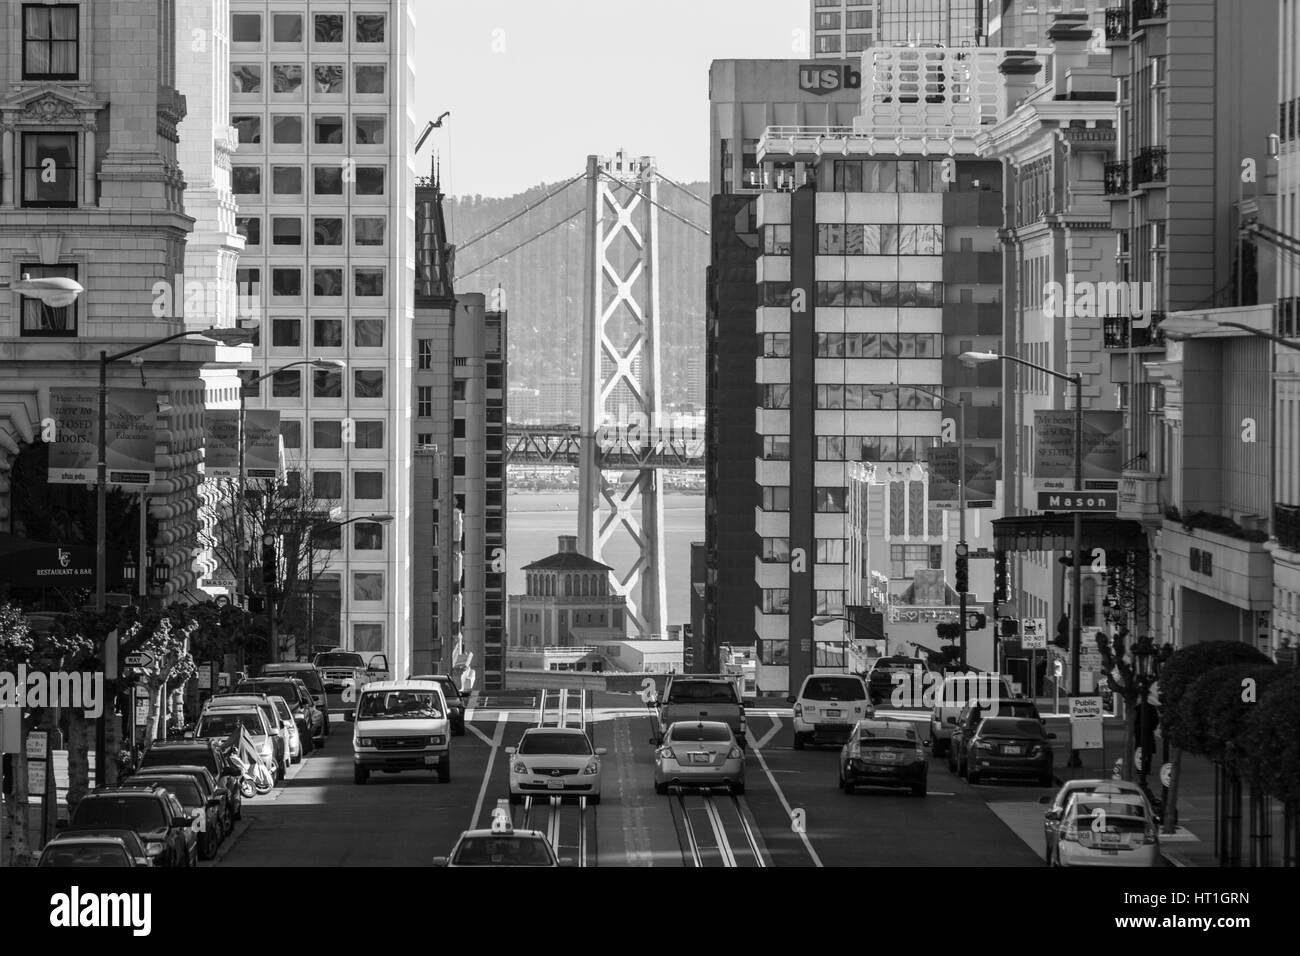 San Francisco, California, EE.UU. - 14 de enero de 2013: vista en blanco y negro de California Street con el puente de la bahía de fondo. Foto de stock